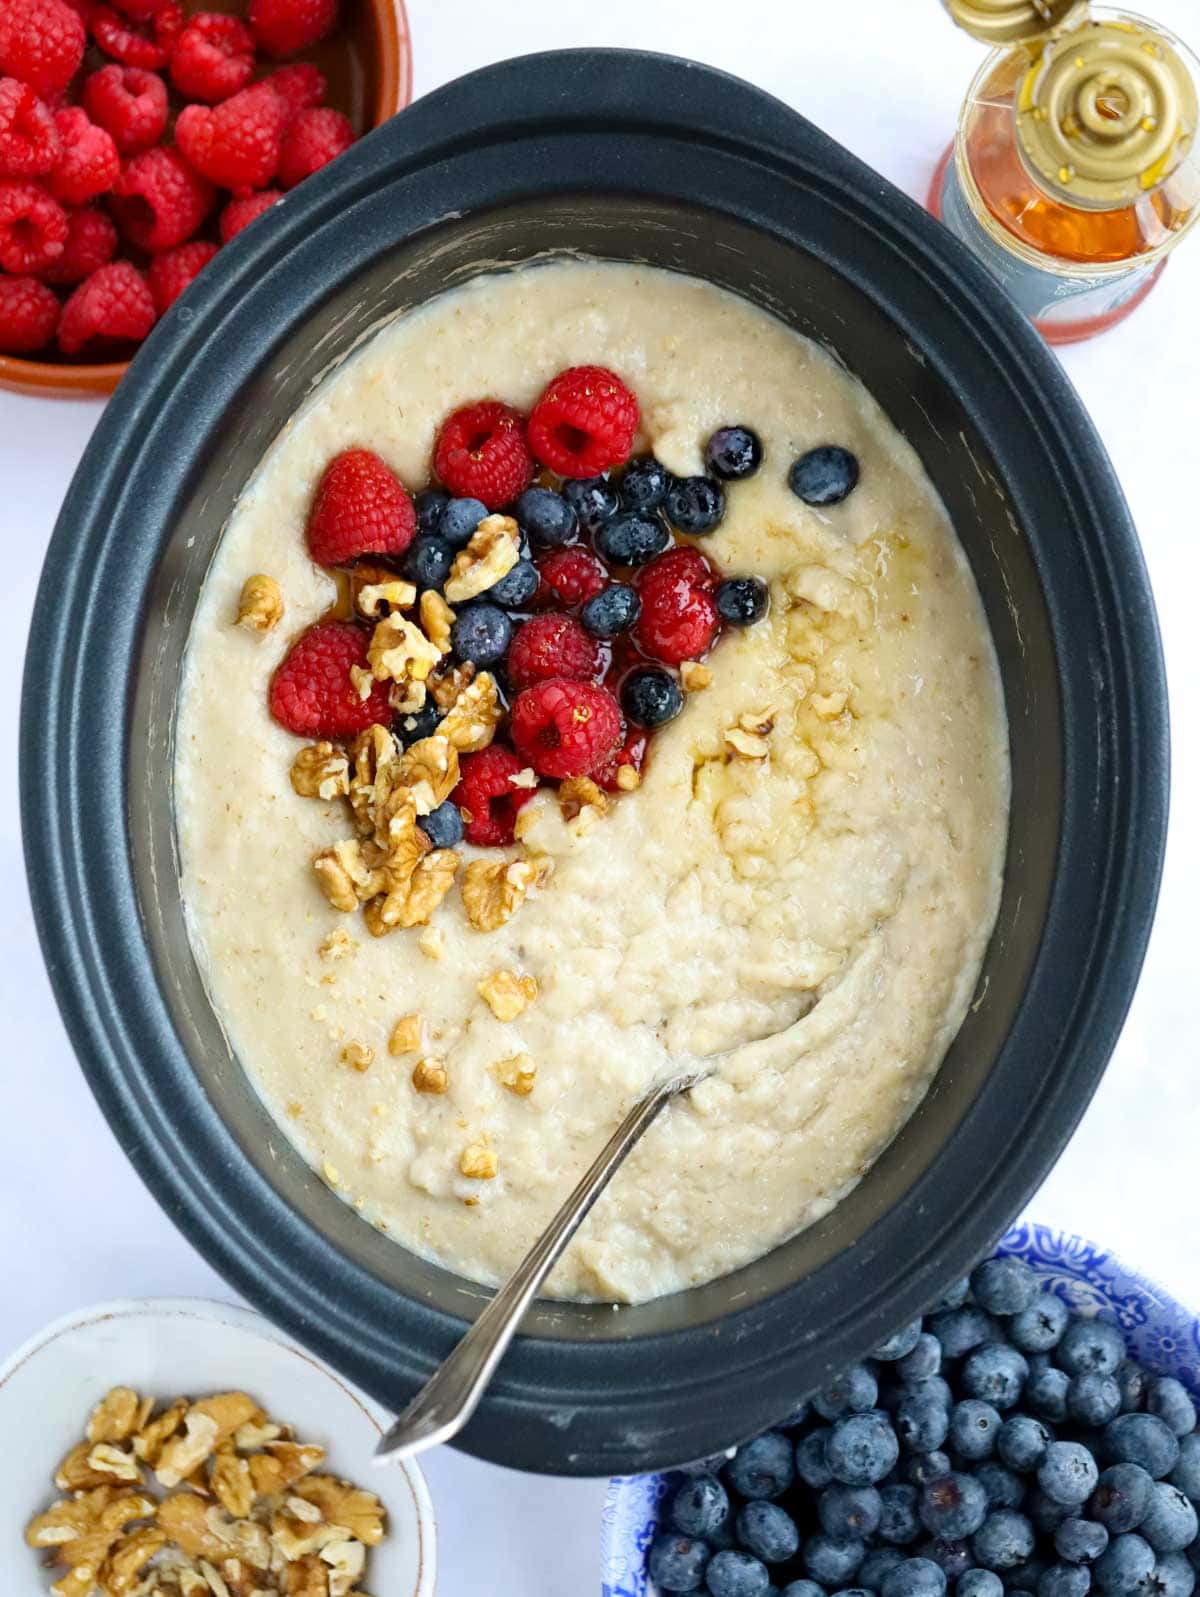 https://www.tamingtwins.com/wp-content/uploads/2022/02/slow-cooker-porridge-2.jpg